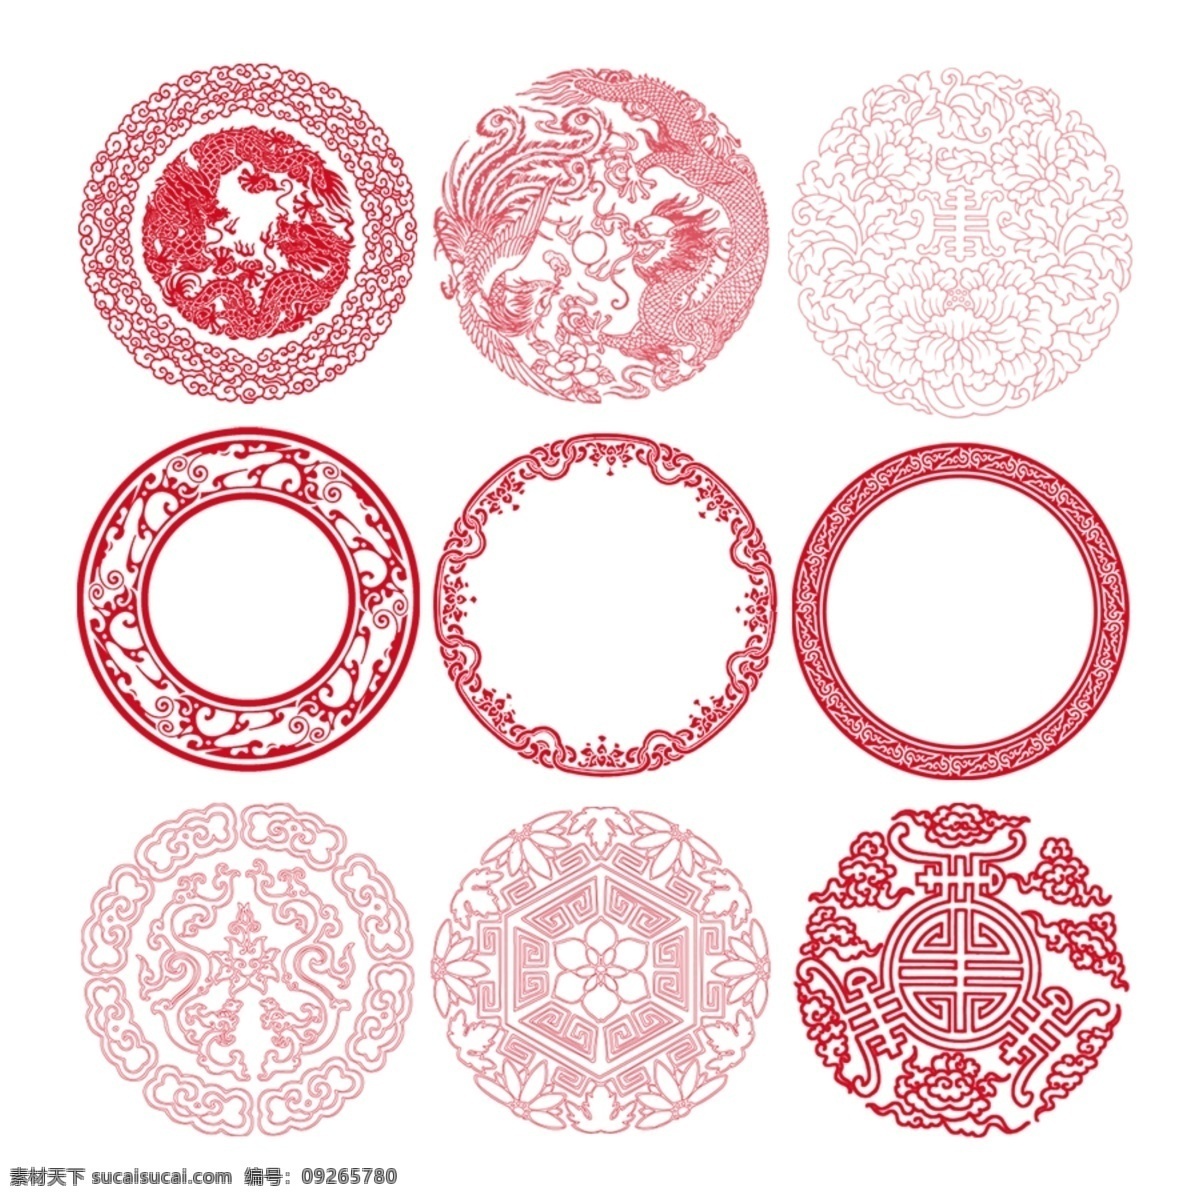 中国 风 底纹 花纹 设计素材 中国风 剪纸 文化艺术 传统文化